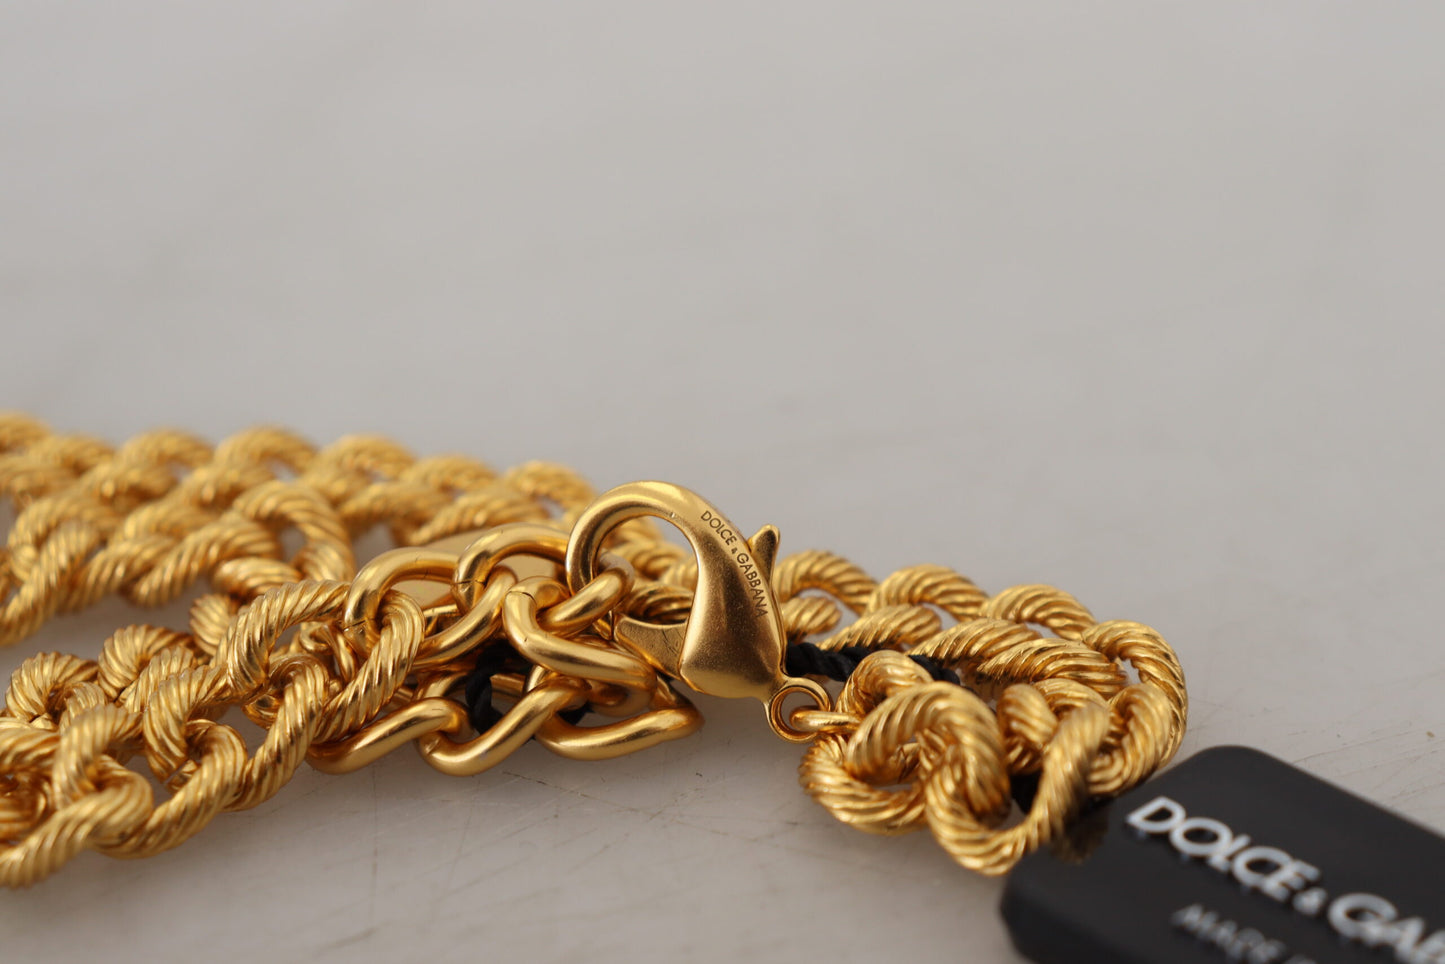 Elegant Gold-Tone Floral Fruit Necklace